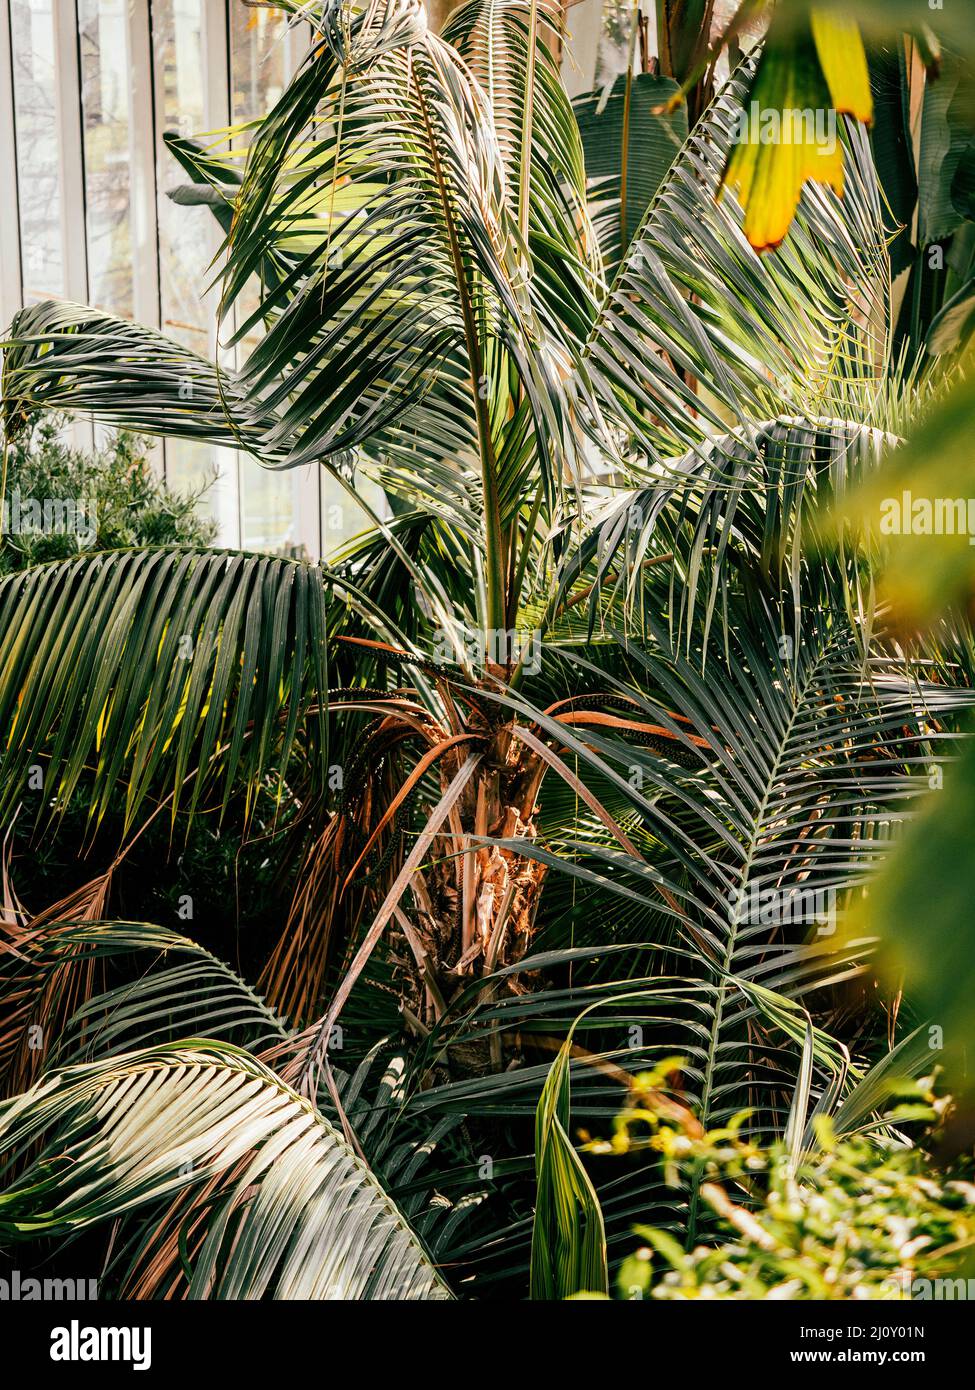 Hojas de plantas tropicales y exuberantes helechos verdes, palmeras y follaje en la selva. Tomado en los jardines botánicos de Ginebra, Suiza. Foto de stock